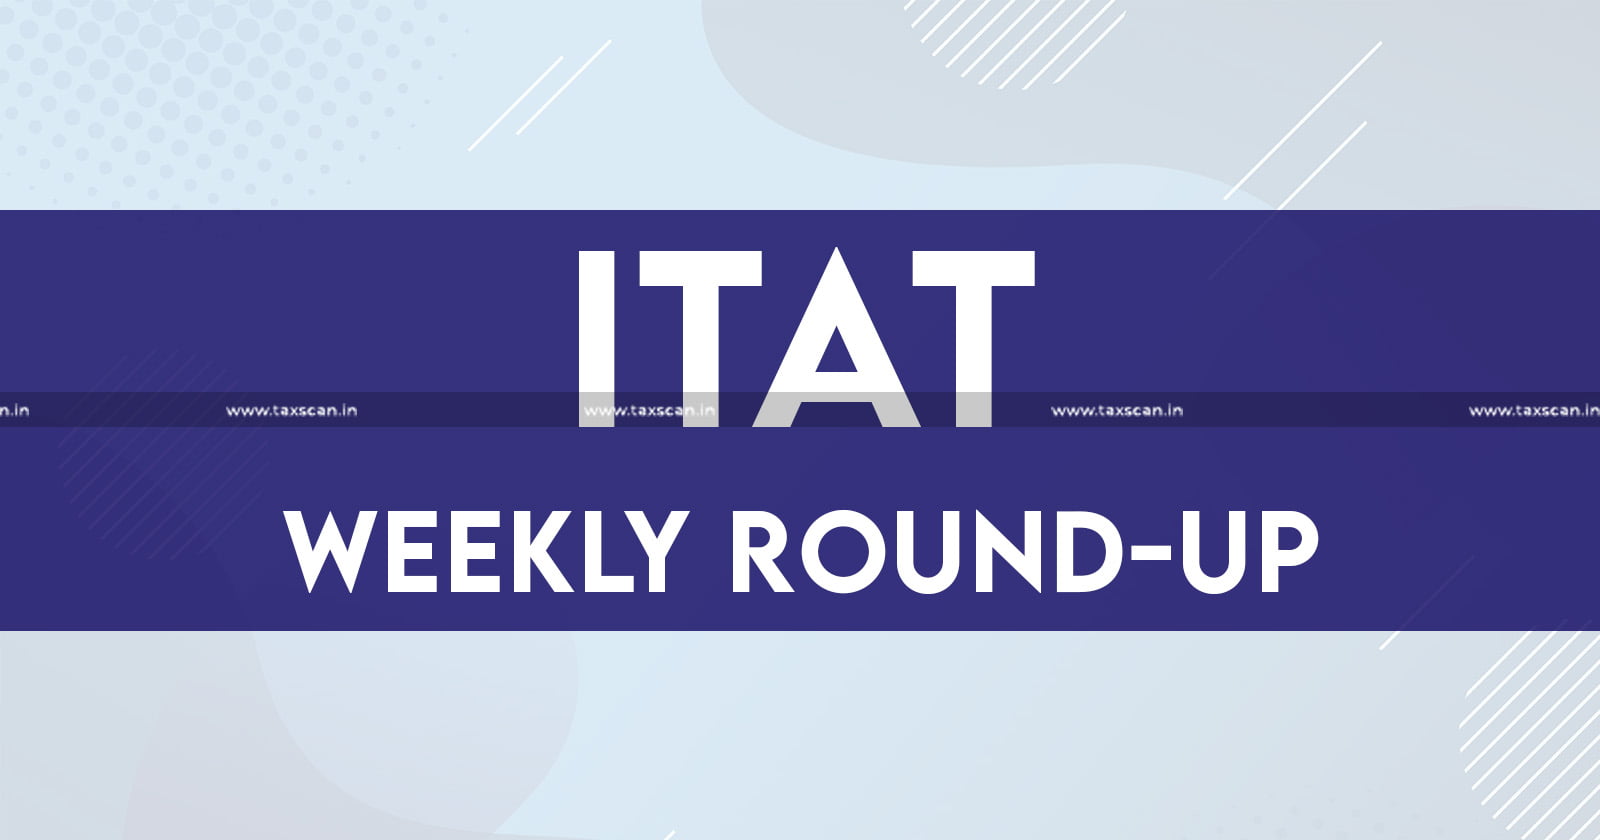 ITAT Weekly Round Up - ITAT - Income Tax - Income Tax Updates - ITAT News - Income Tax News - Taxscan